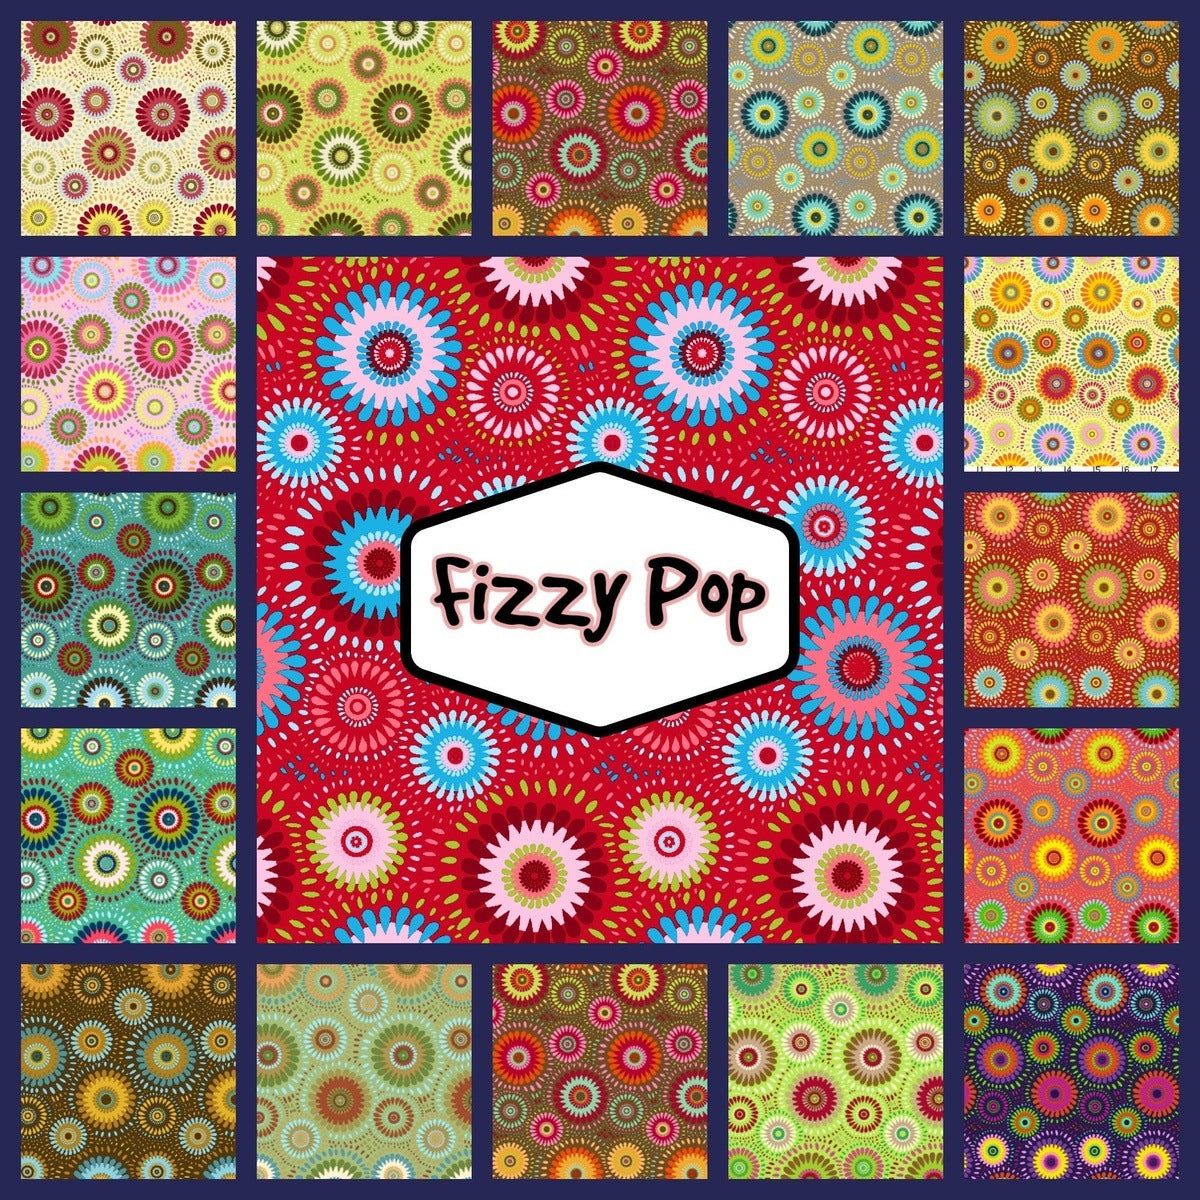 34 Fizzy Pop pre cut 10 " squares 100% cotton fabric quilt